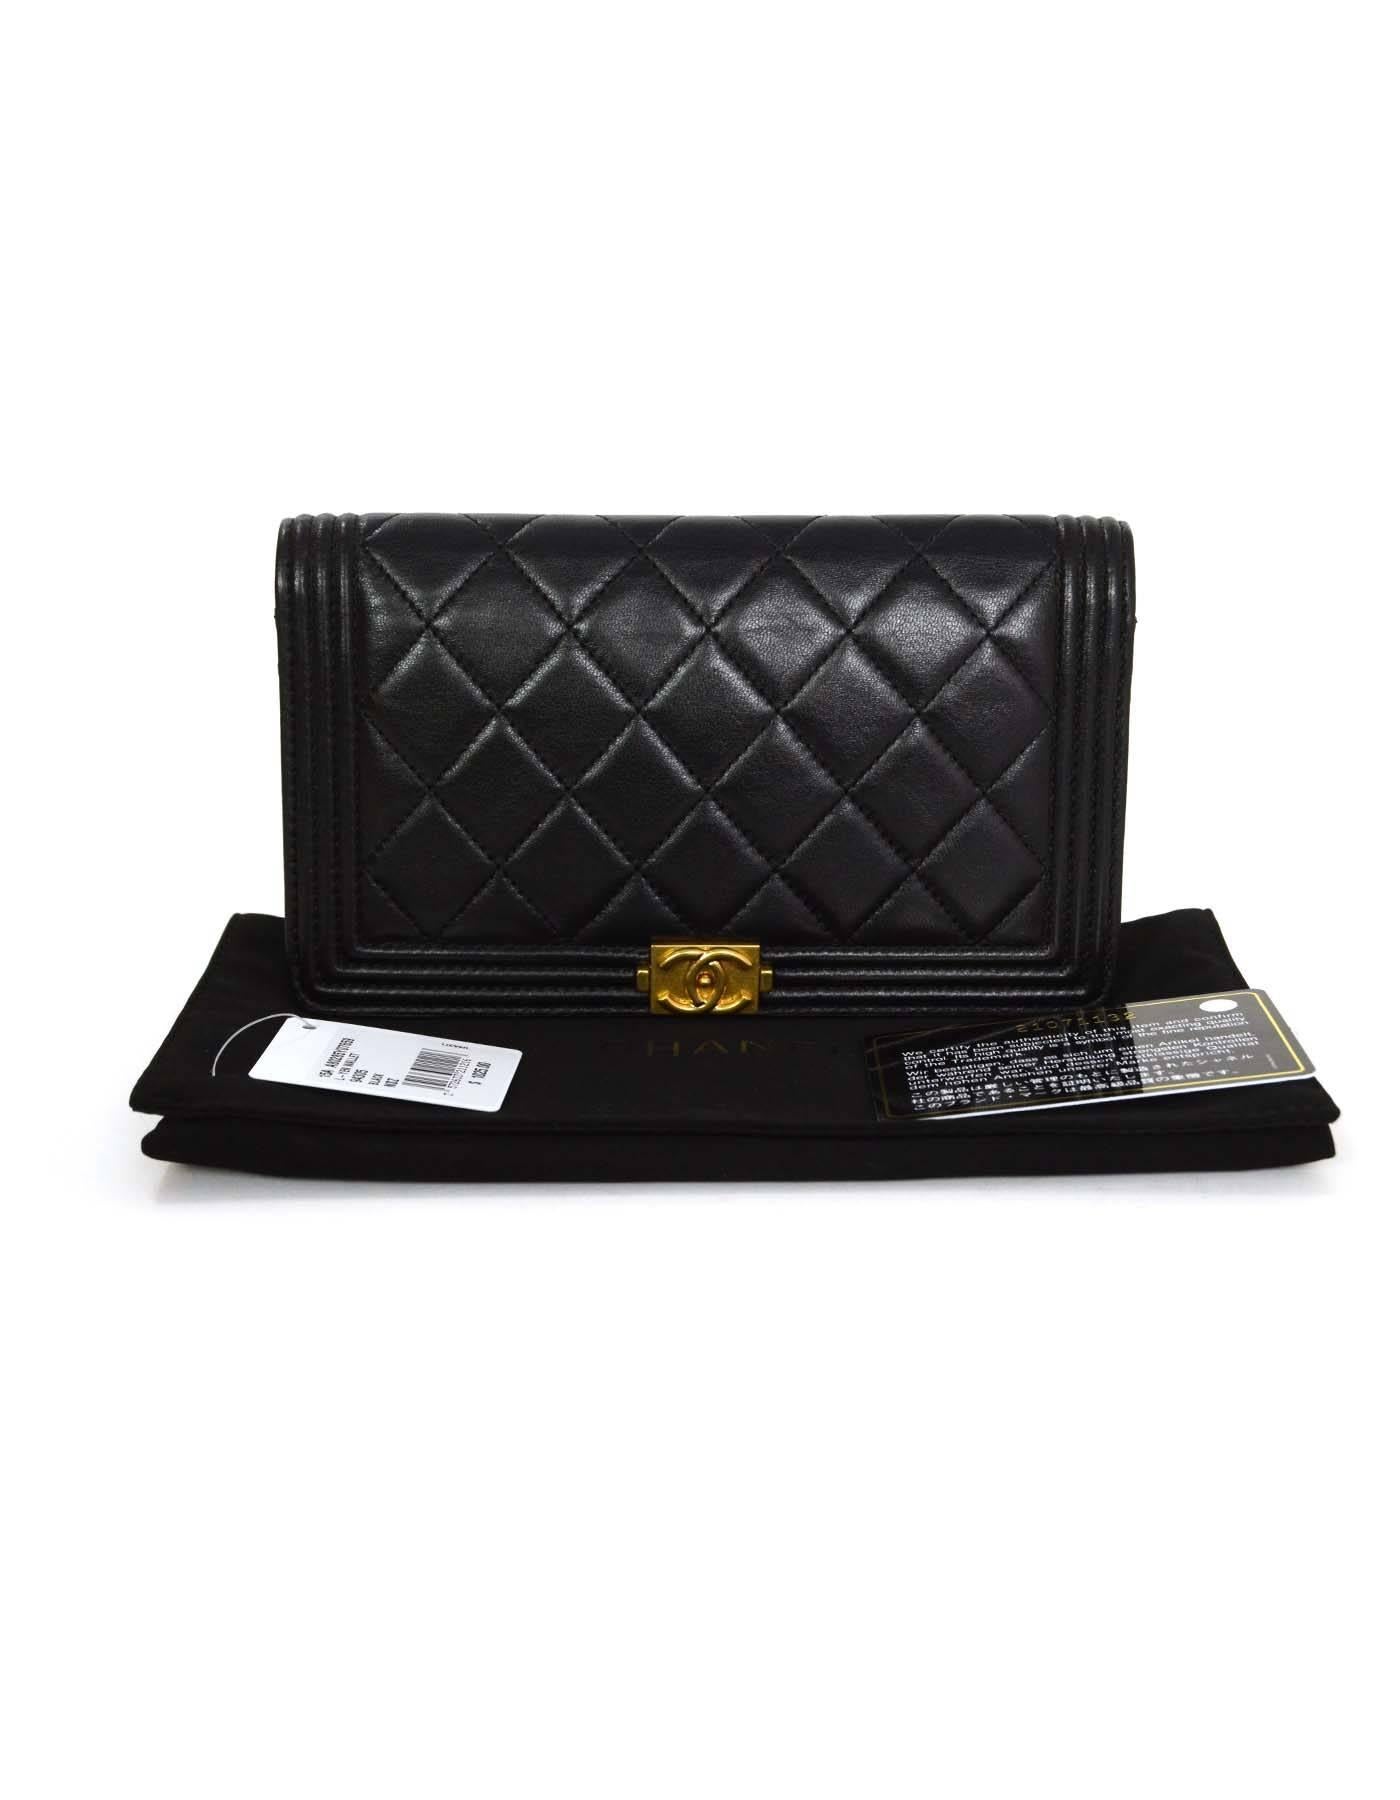 Chanel Black Lambskin Quilted Boy Yen Wallet GHW  1